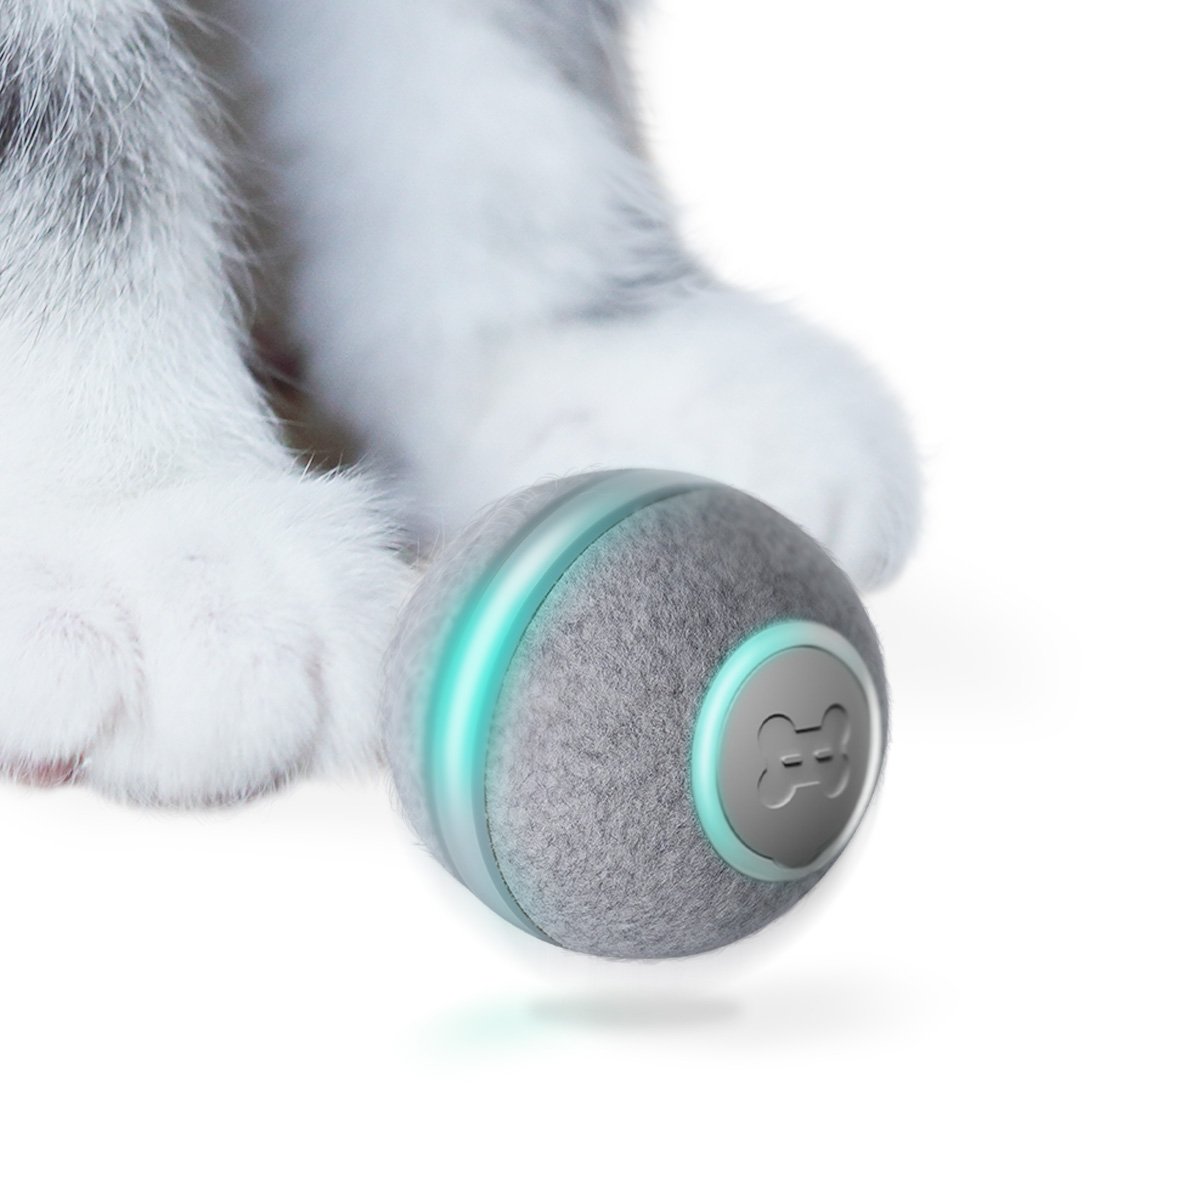 автоматическая игрушка для кота - чирбл мяч